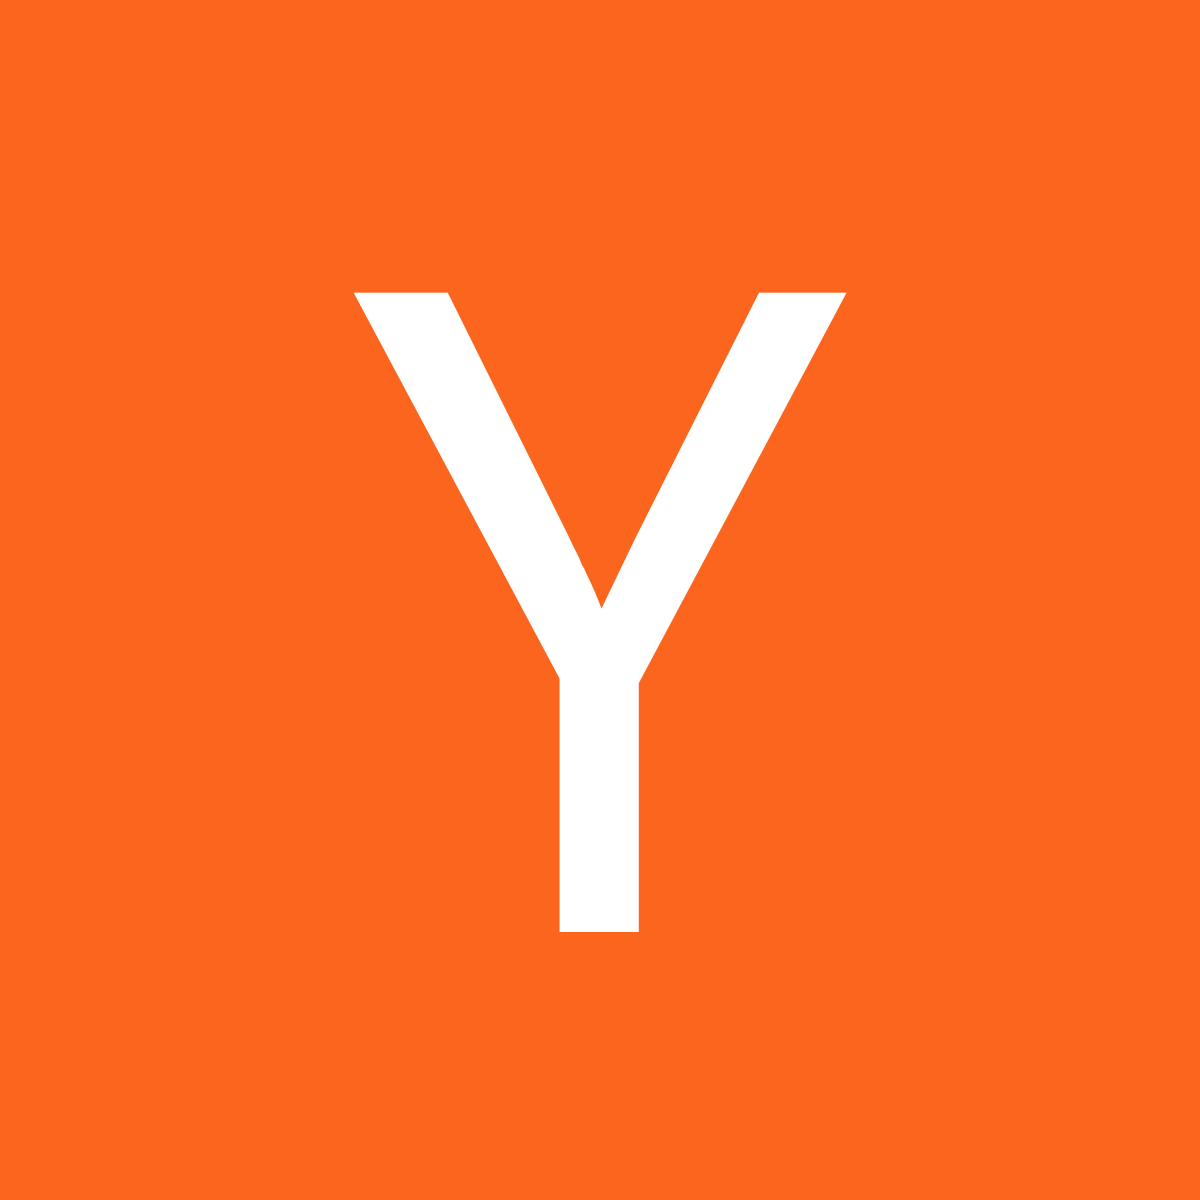 logo_yc